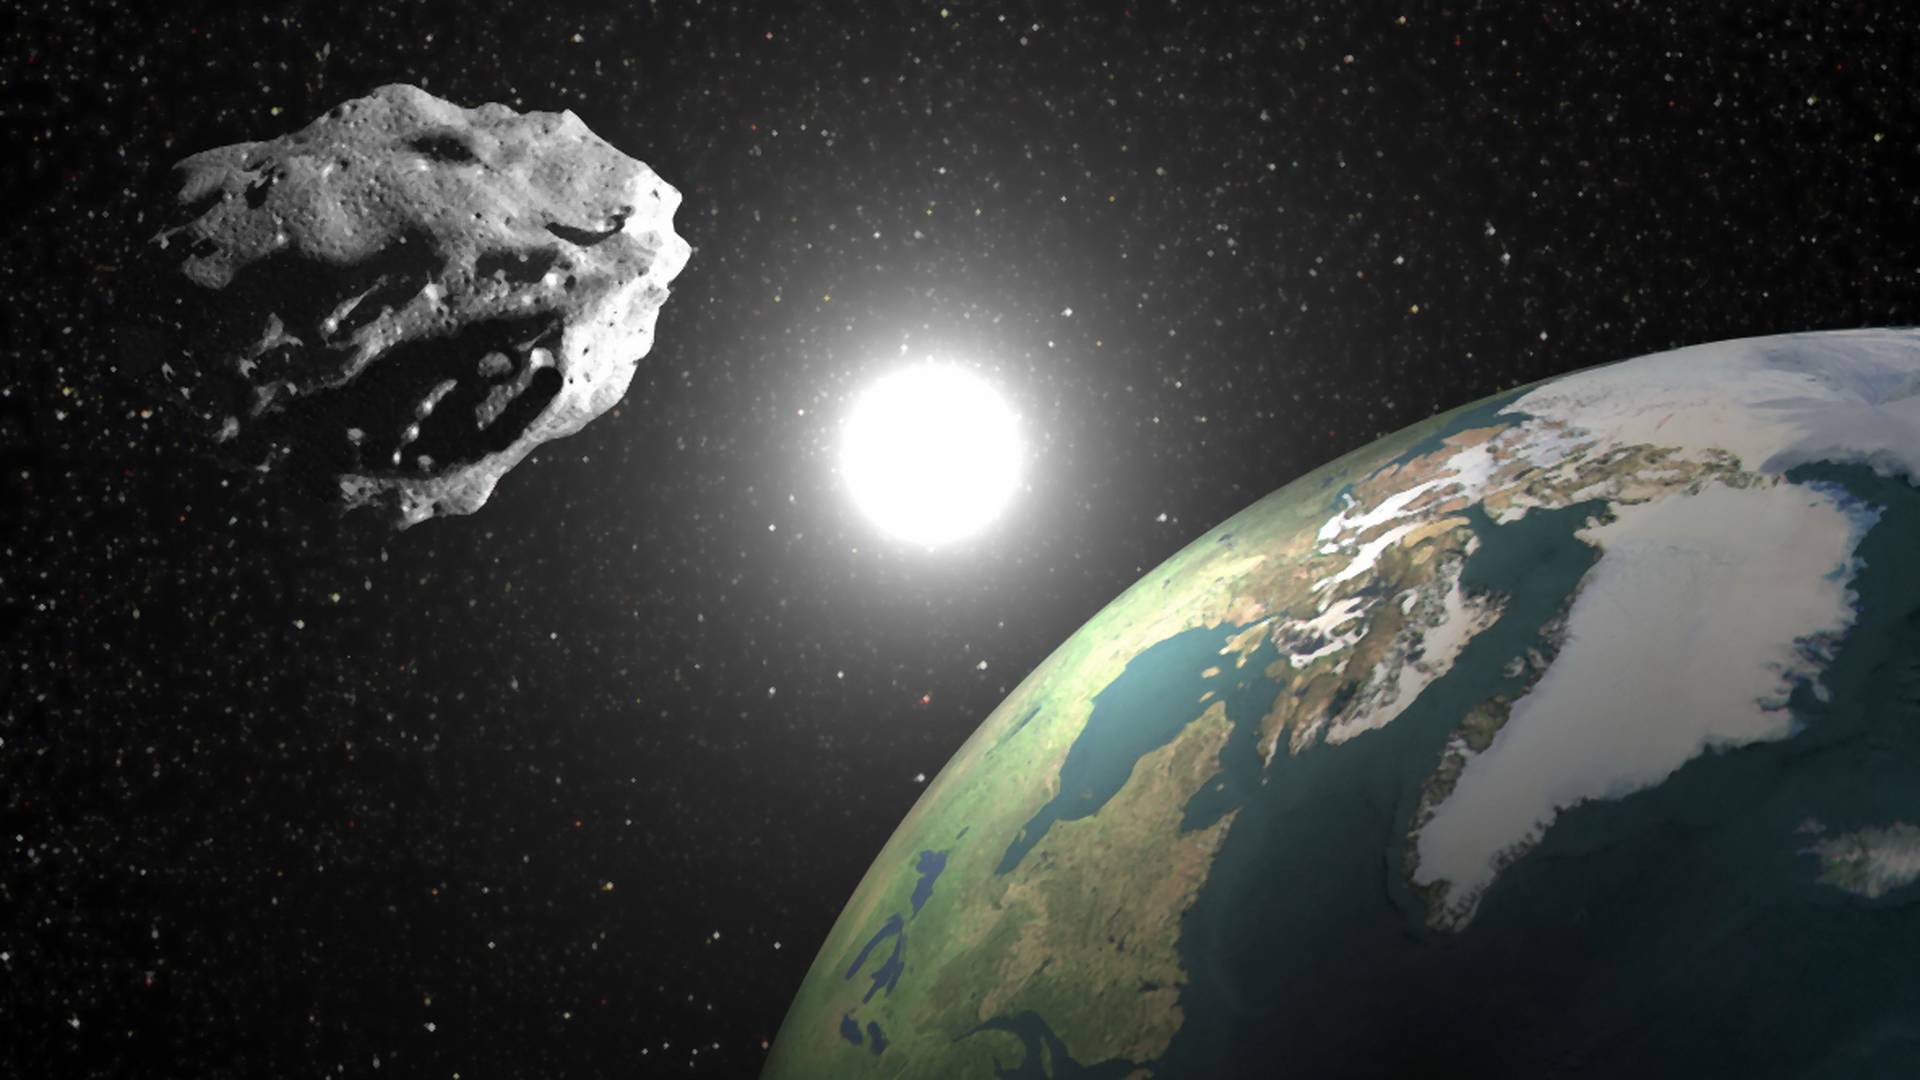 "Potencjalnie niebezpieczna", potężna asteroida Phaethon przeleci obok Ziemi tuż przed świętami